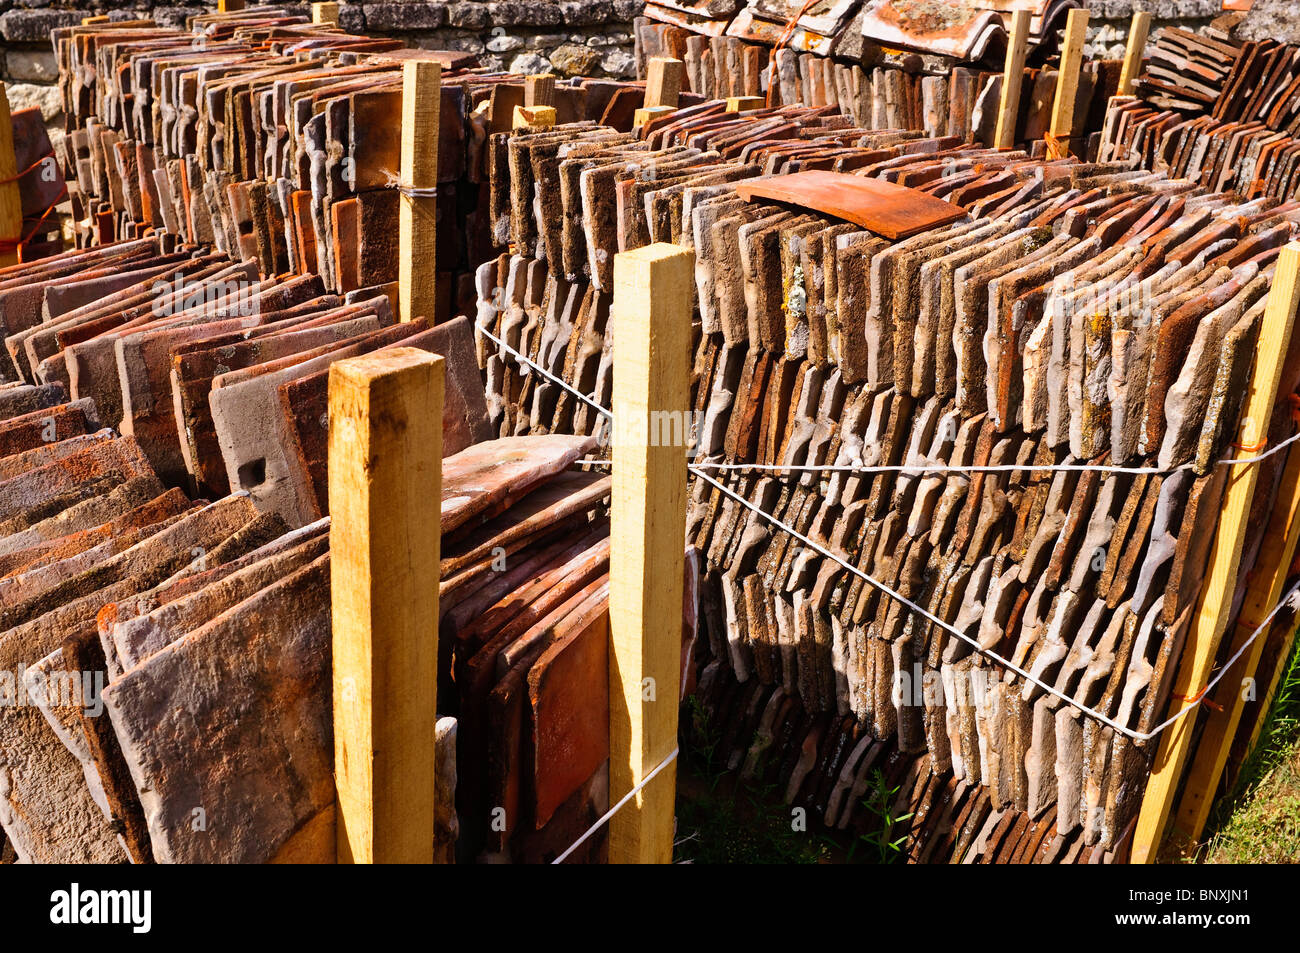 Stapel von zurückgefordert alte traditionelle rote Dachziegel - Frankreich. Stockfoto